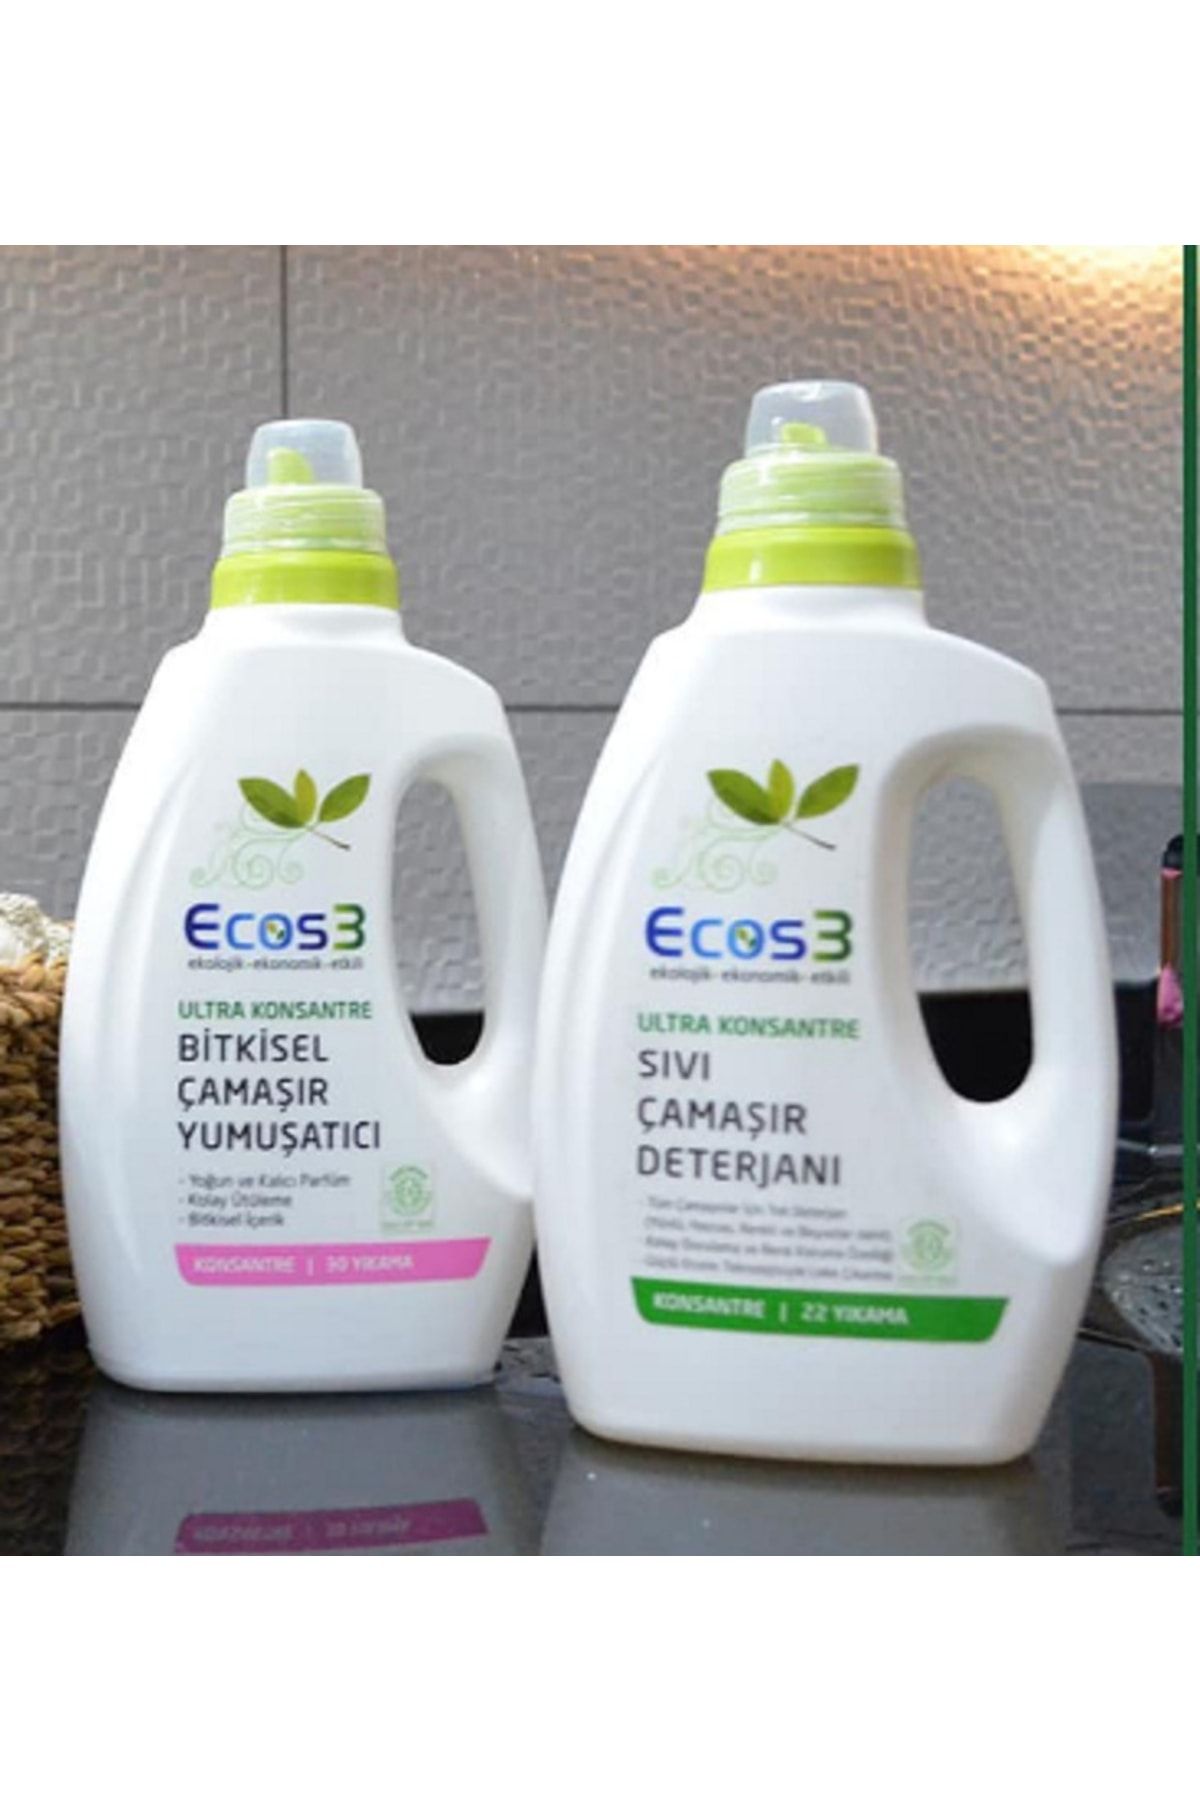 Ecos3 Organik Konsantre Çamaşır Yumuşatıcı 30 Yıkama + Organik Sıvı Çamaşır Deterjanı 22 Yıkama